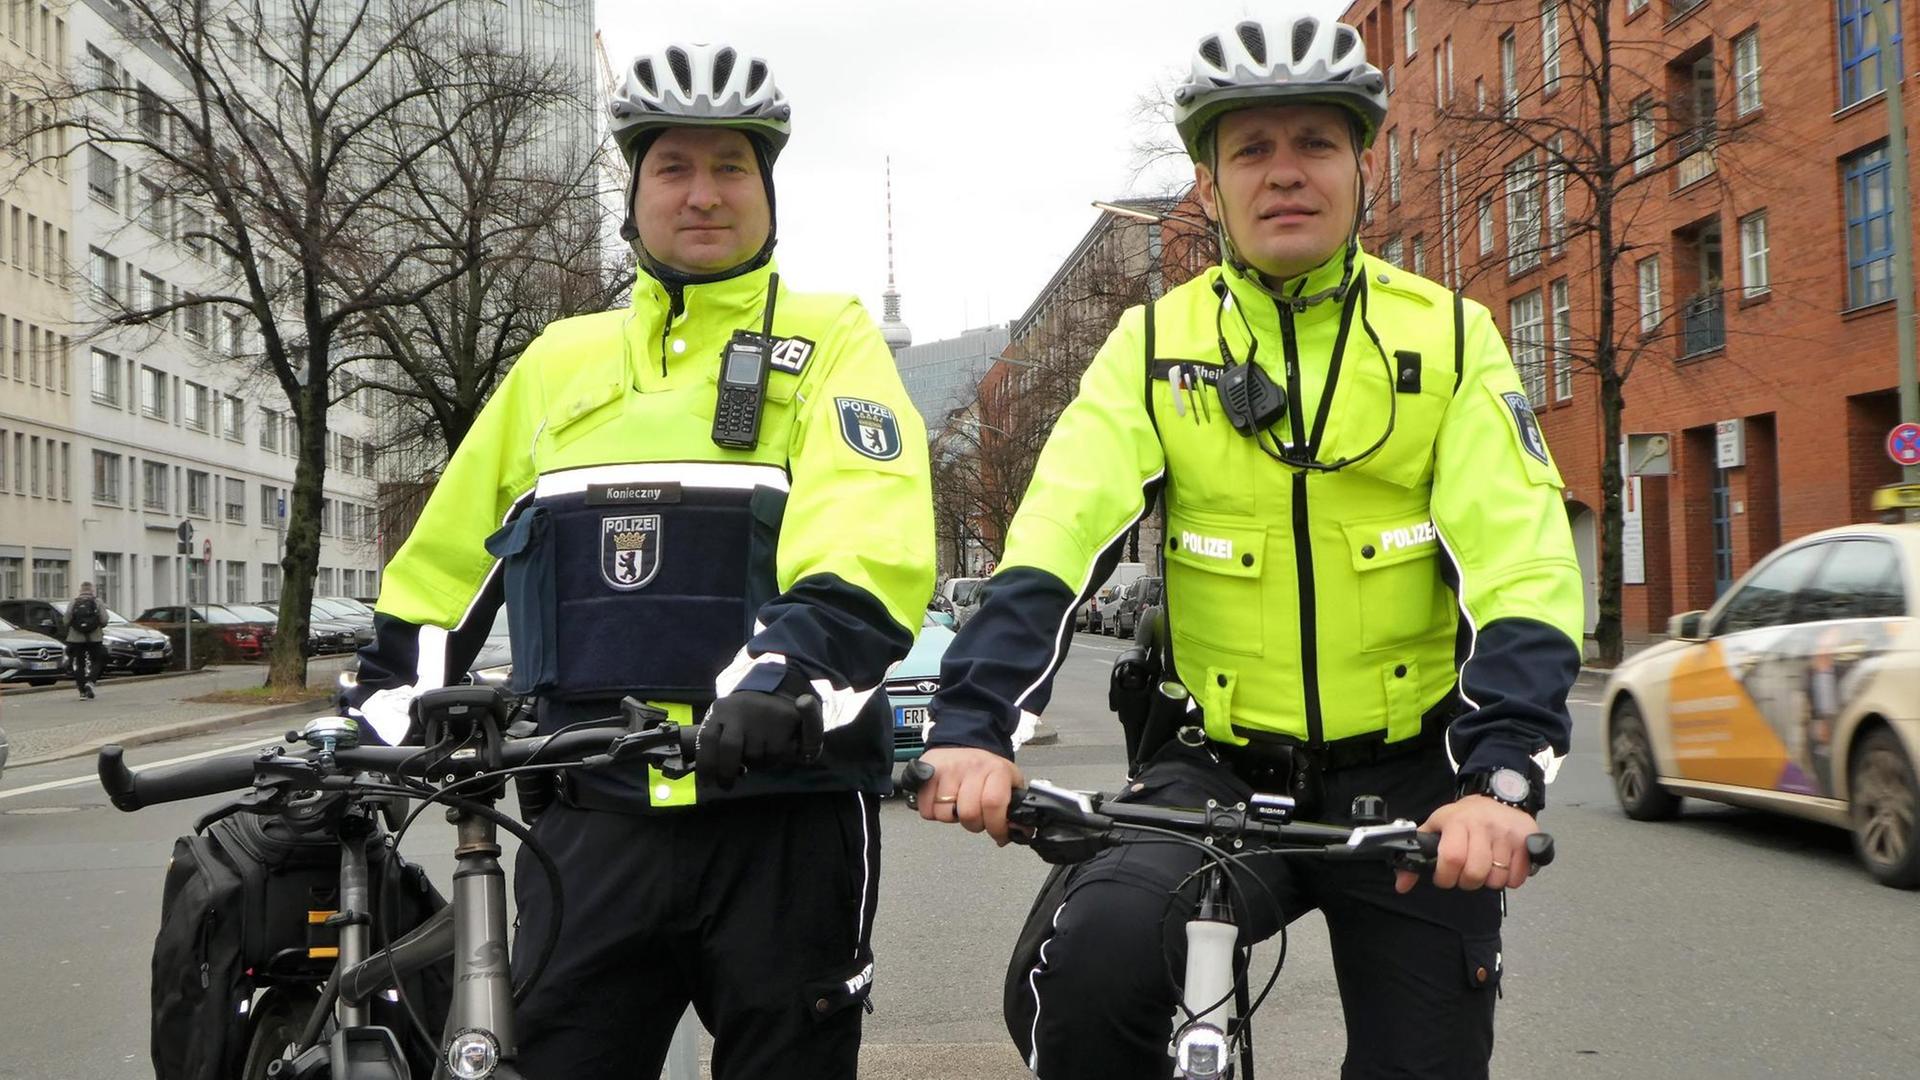 2421391602_Polizeikommissare auf Fahrrädern_Oliver Konieczny (li.) und Ronny Theil 02.jpg